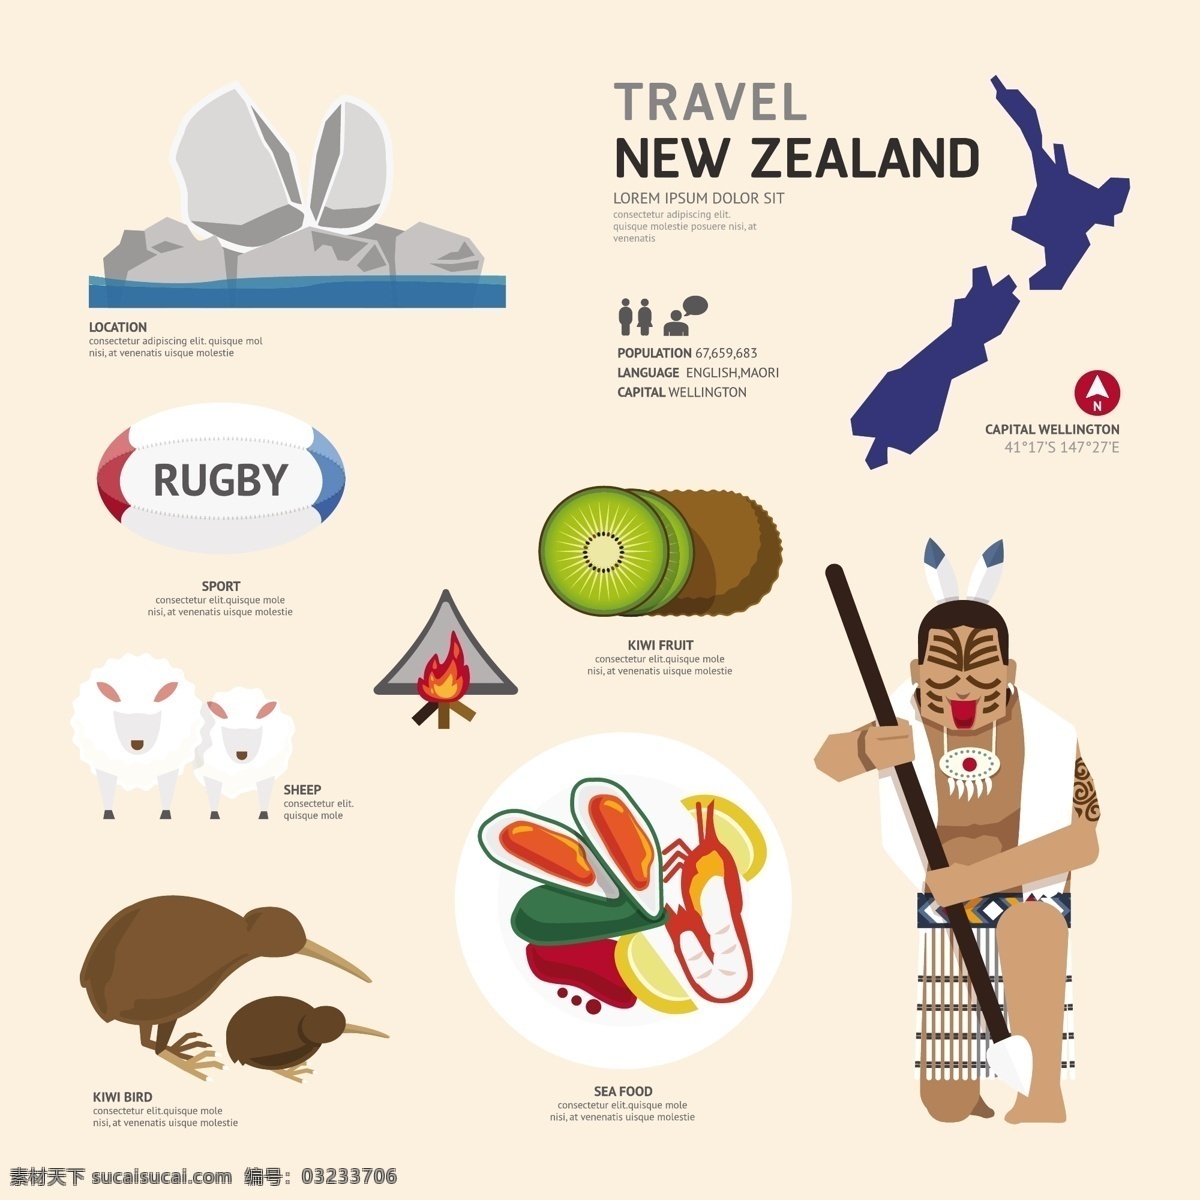 新西兰旅游 新西兰元素 新西兰主题 新西兰文化 国际旅游 国际 新西兰景点 出国旅游 大洋洲风情 新西兰 旅游 奇异果 毛利人